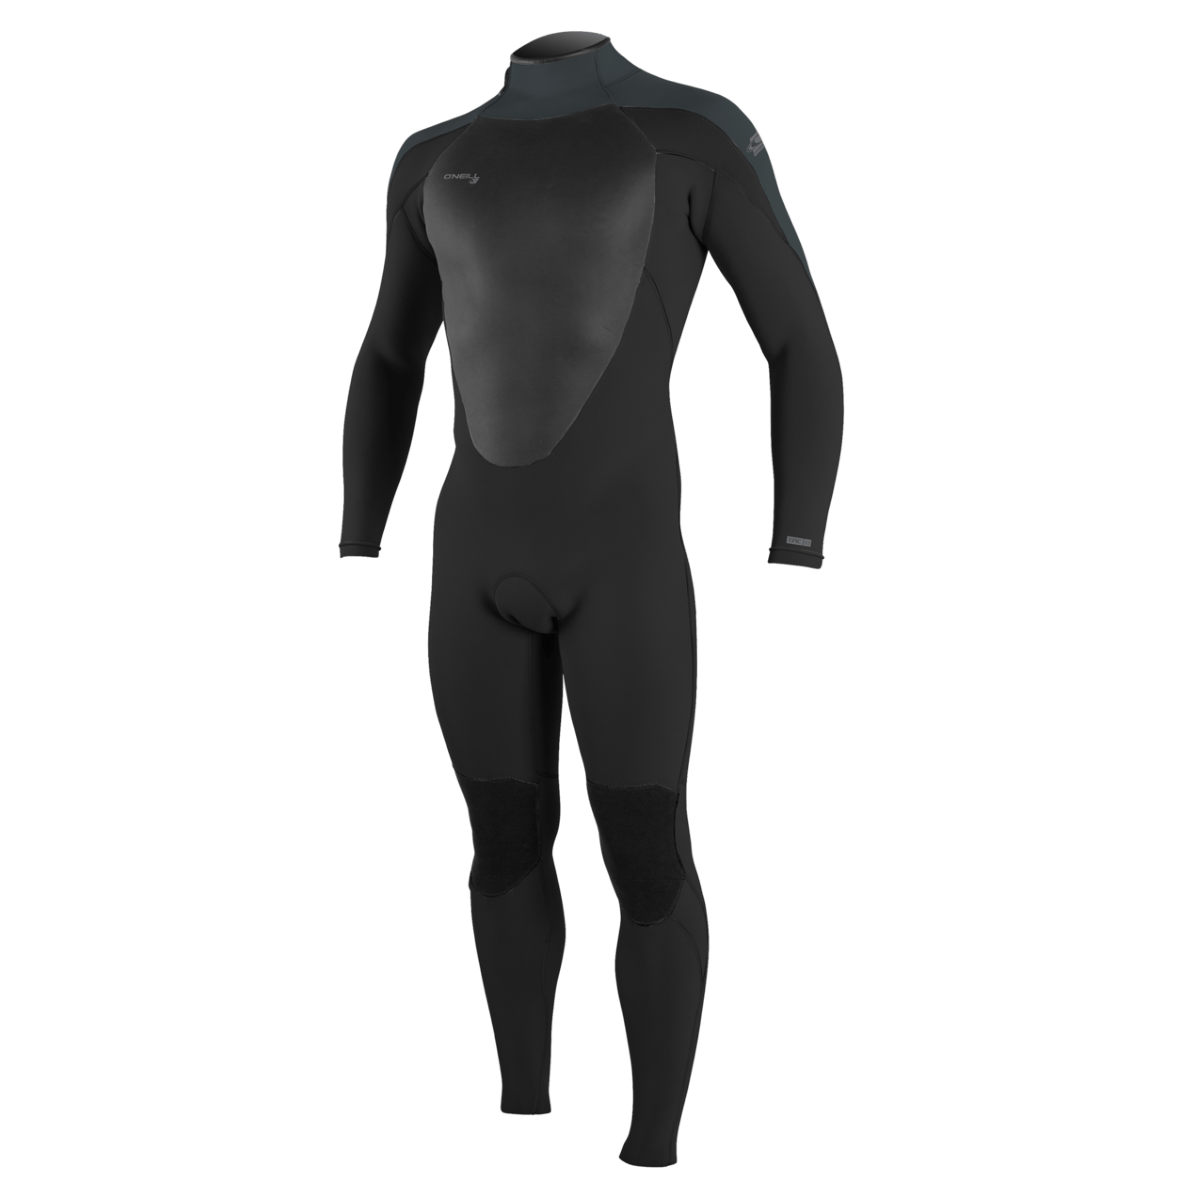 O'Neill Epic 3/2 BZ Full Wetsuit in Black/Gunmetal - BoardCo